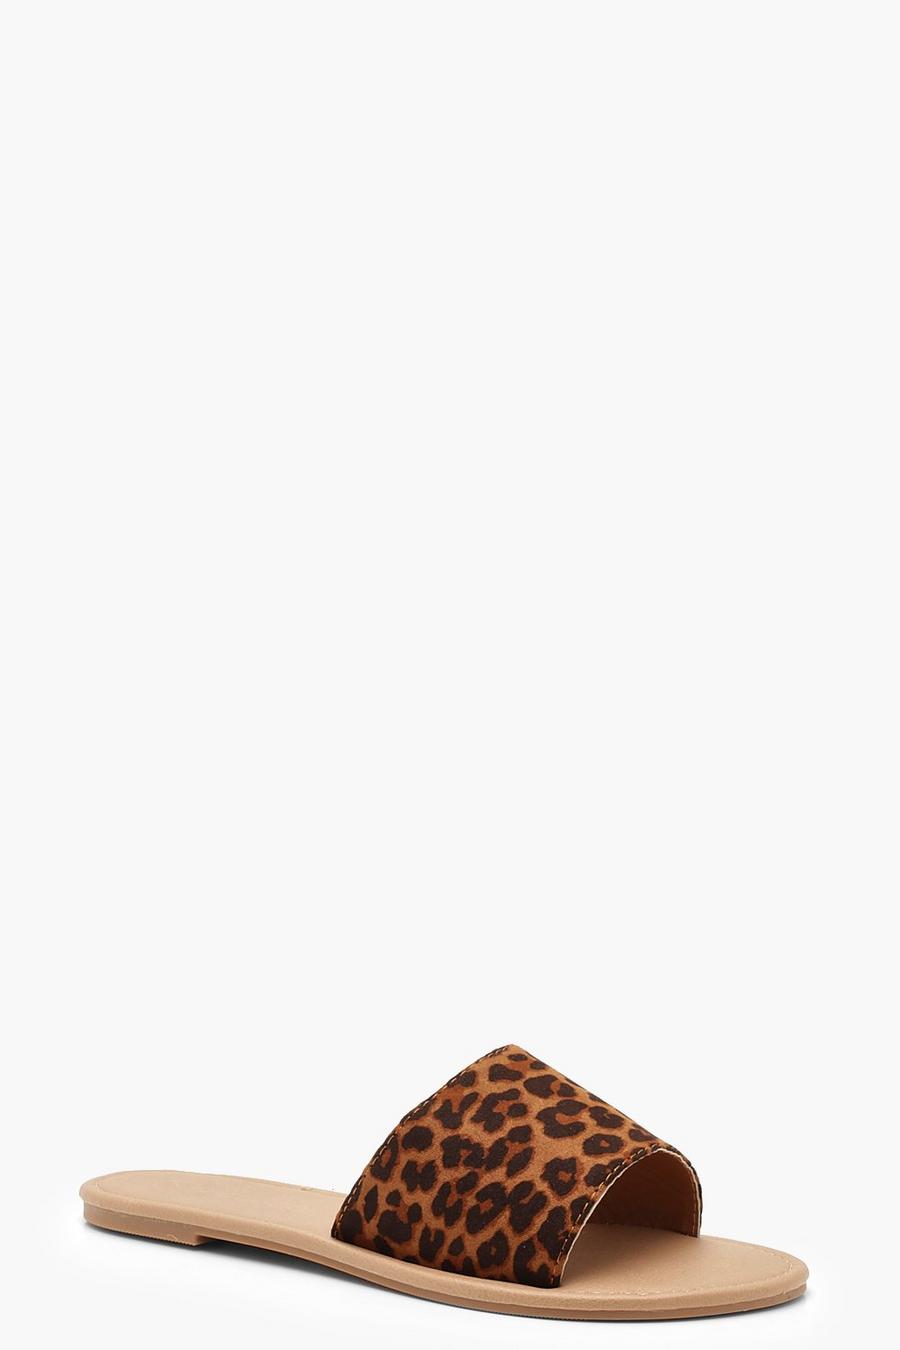 Claquettes plates à bride léopard